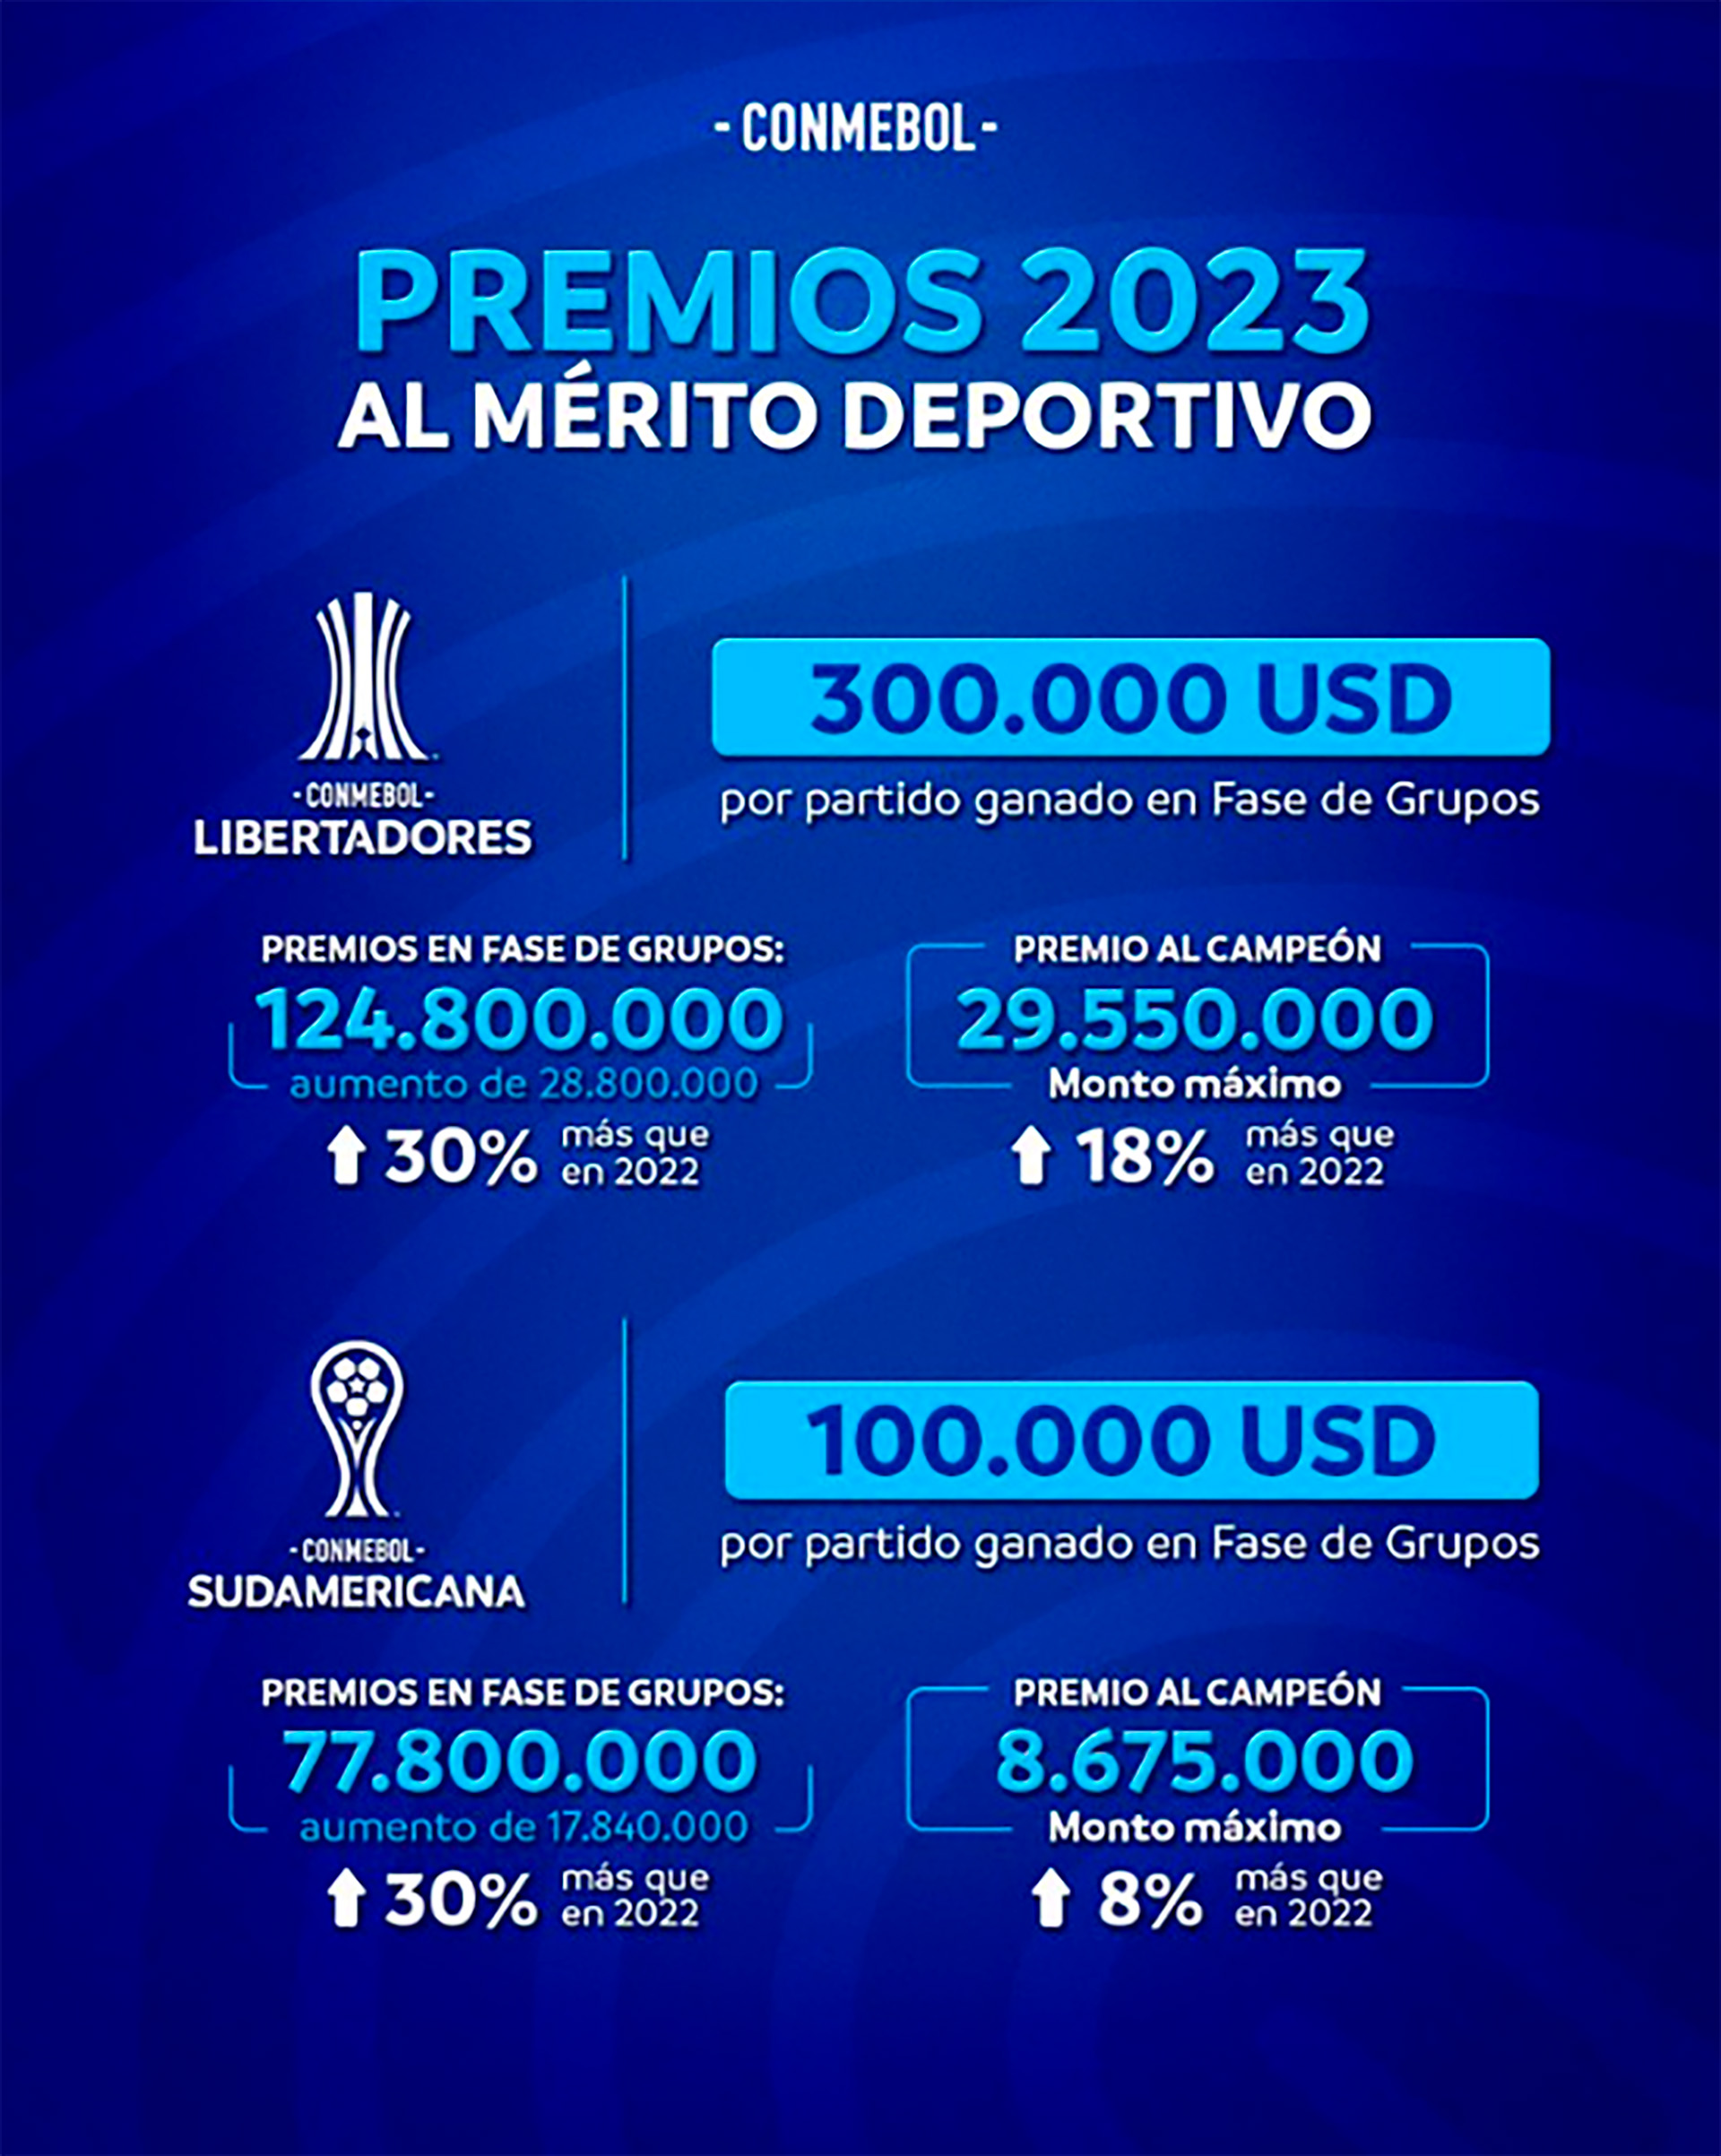 Premios por partido ganador en Copa Libertadores y Sudamericana